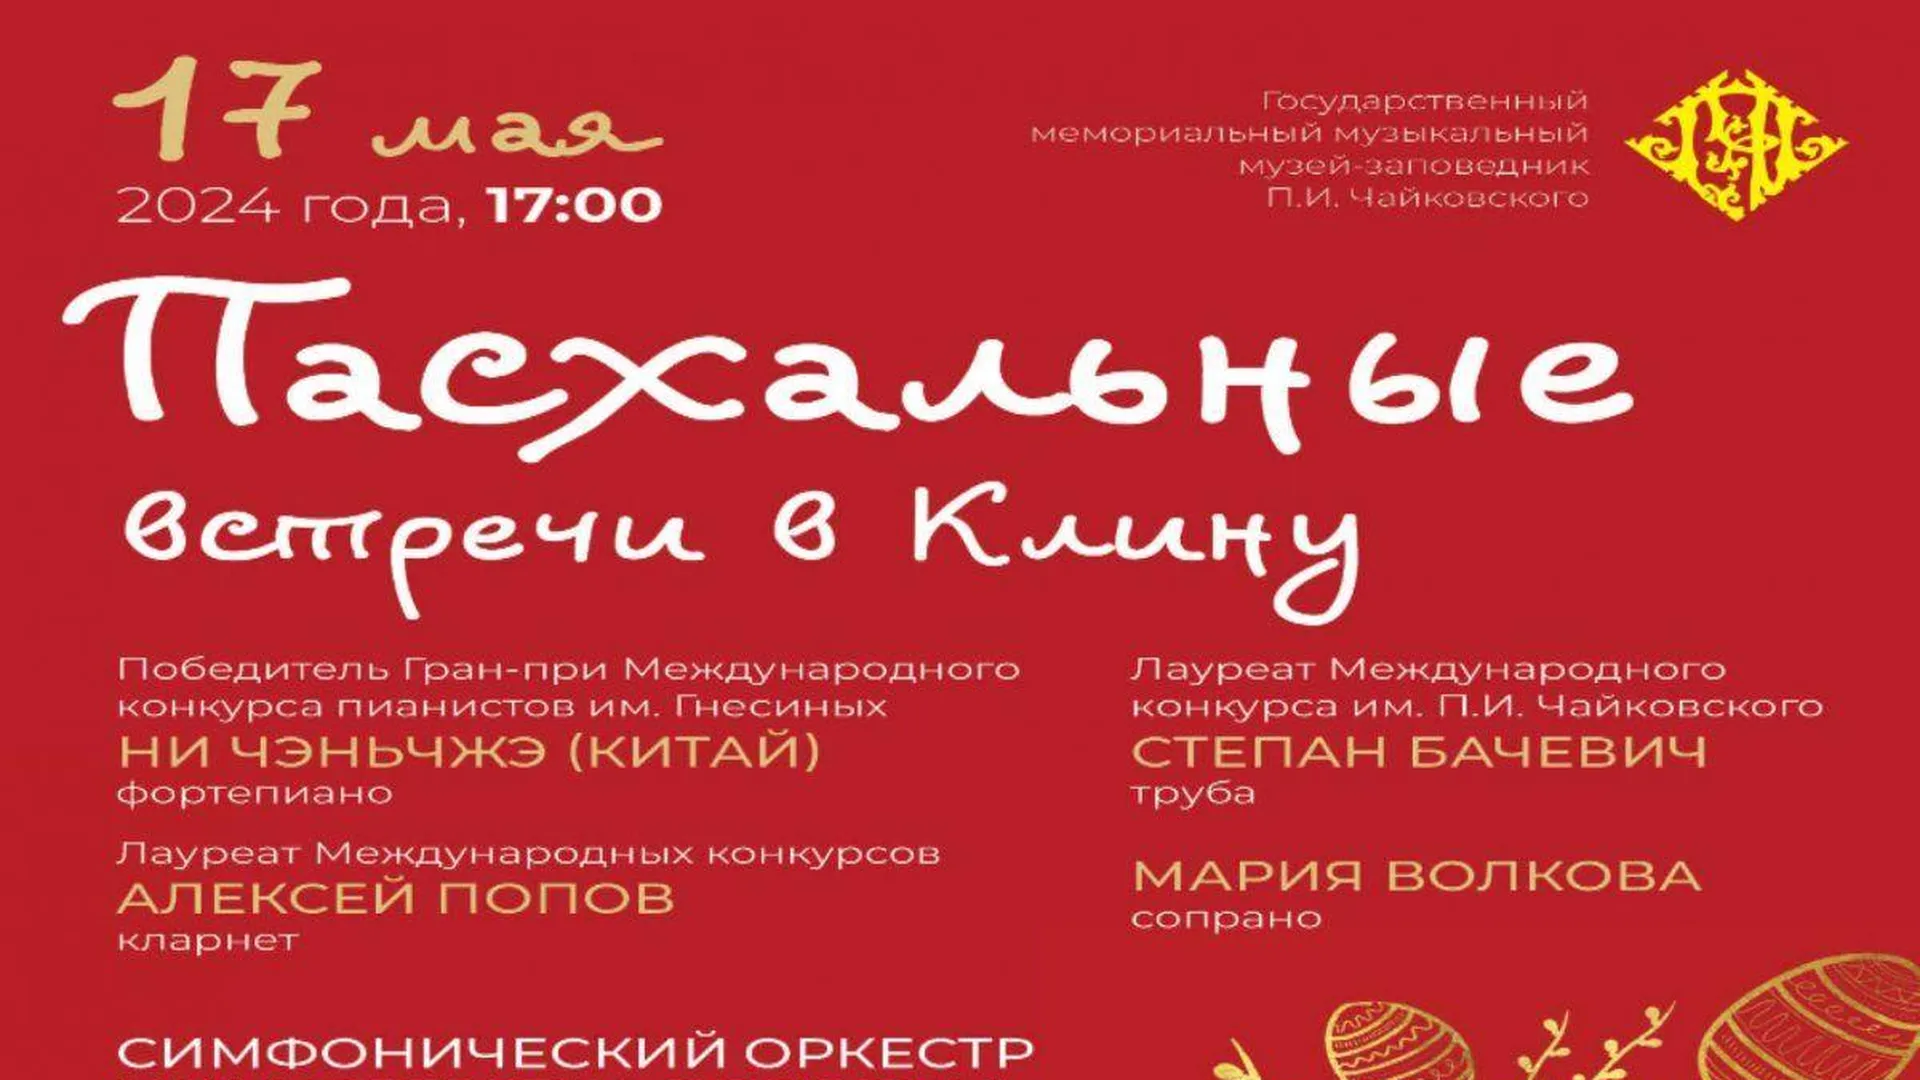 «Пасхальные встречи в Клину» состоятся в музее-заповеднике П.И. Чайковского